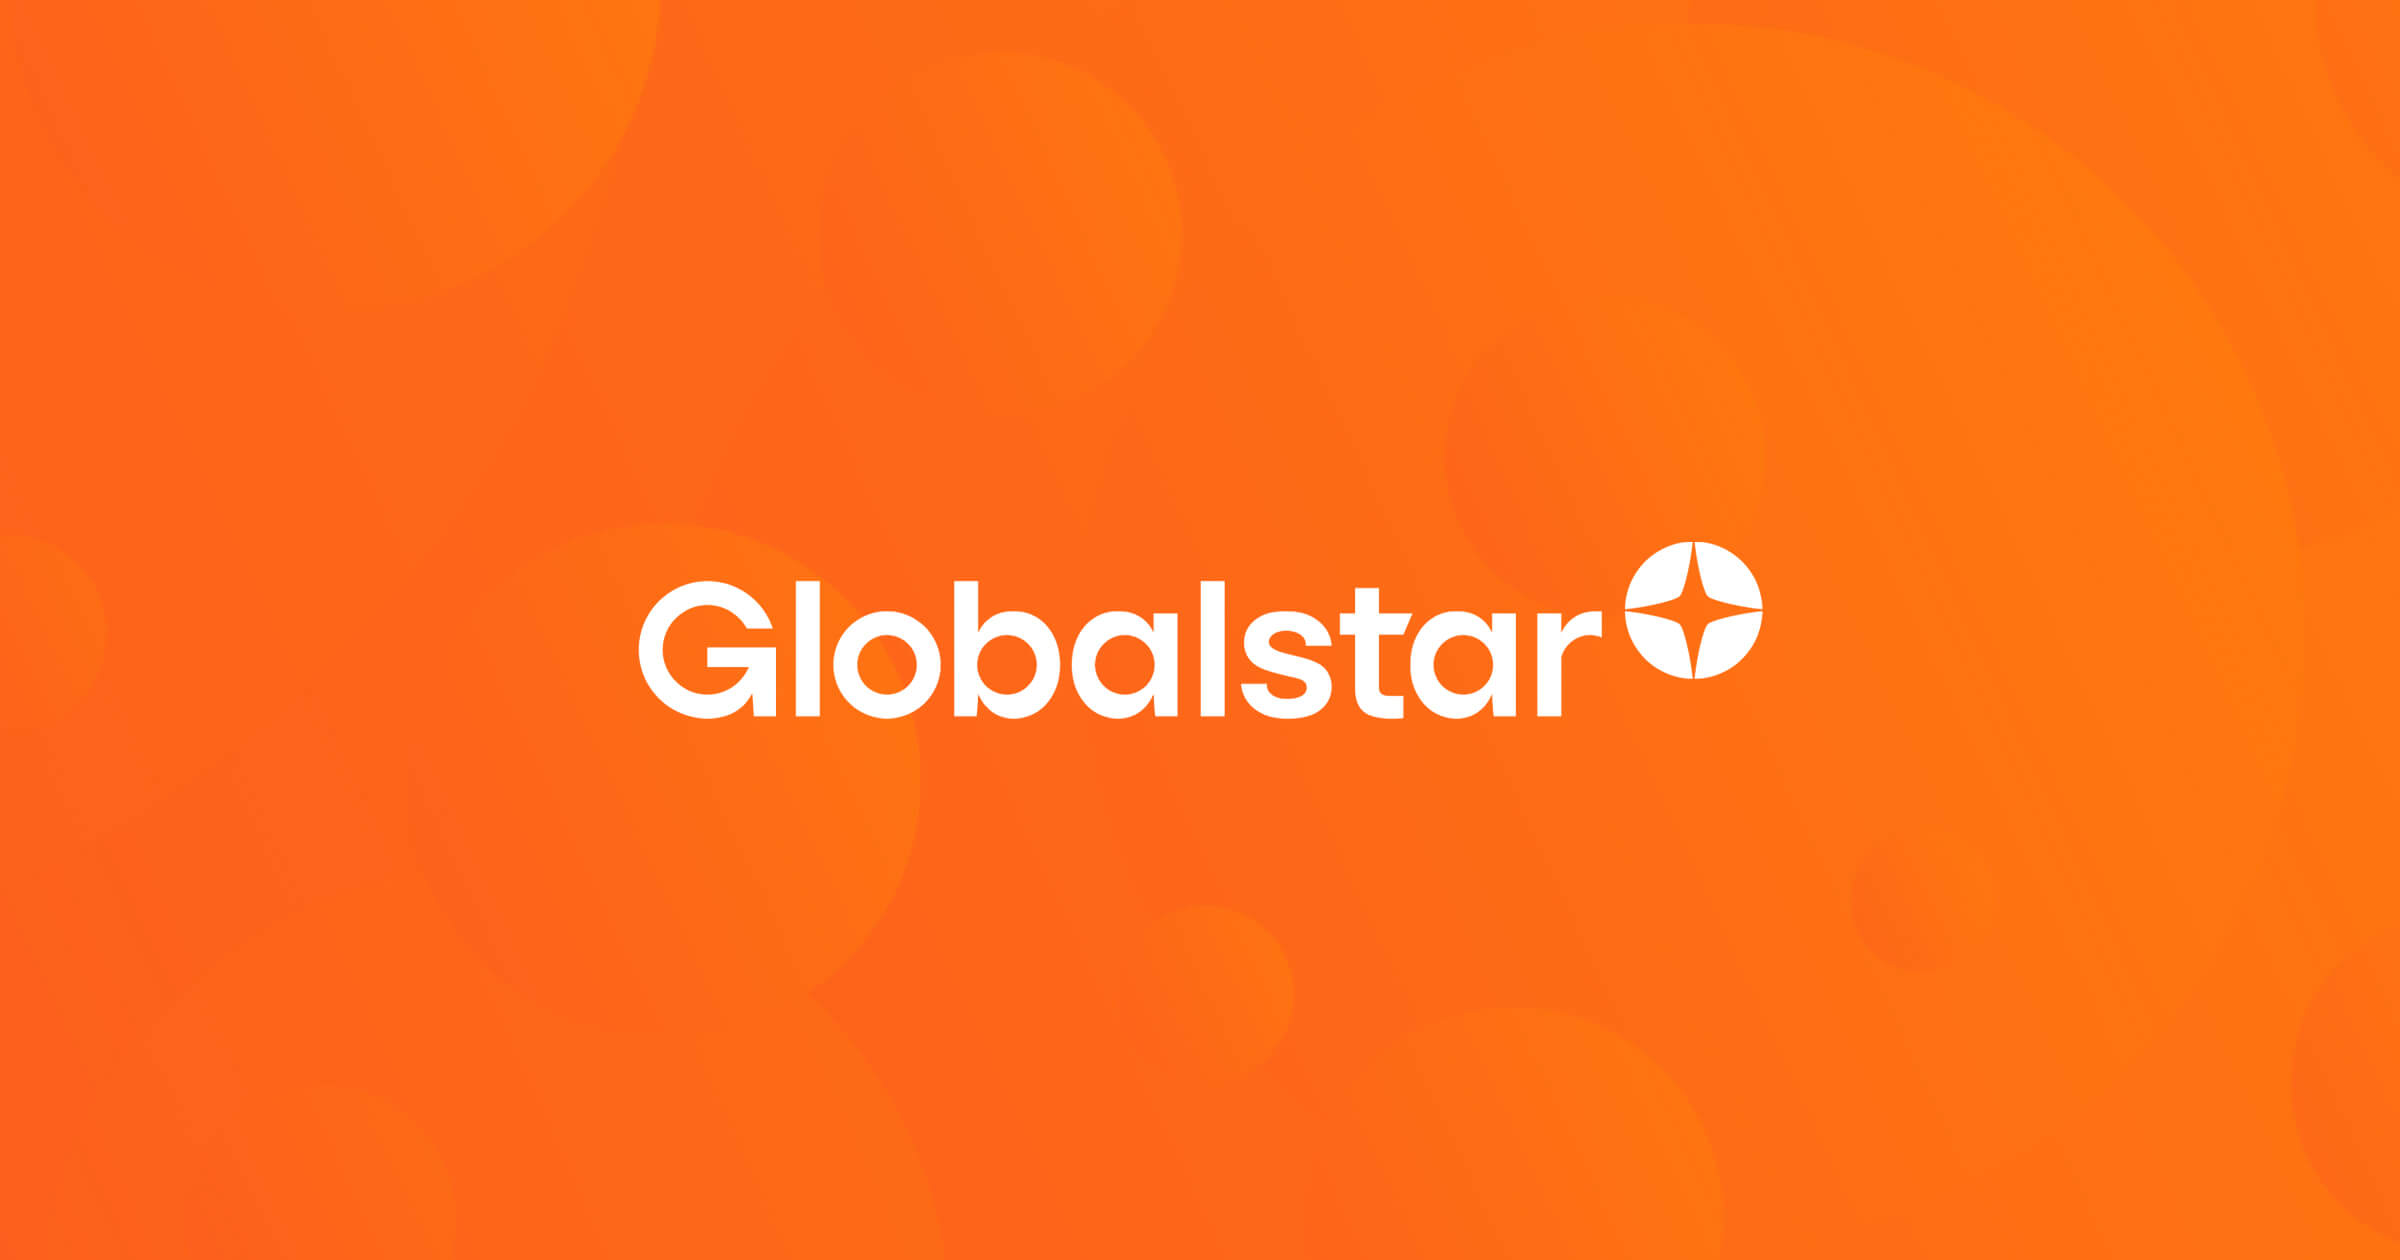 (c) Globalstar.com